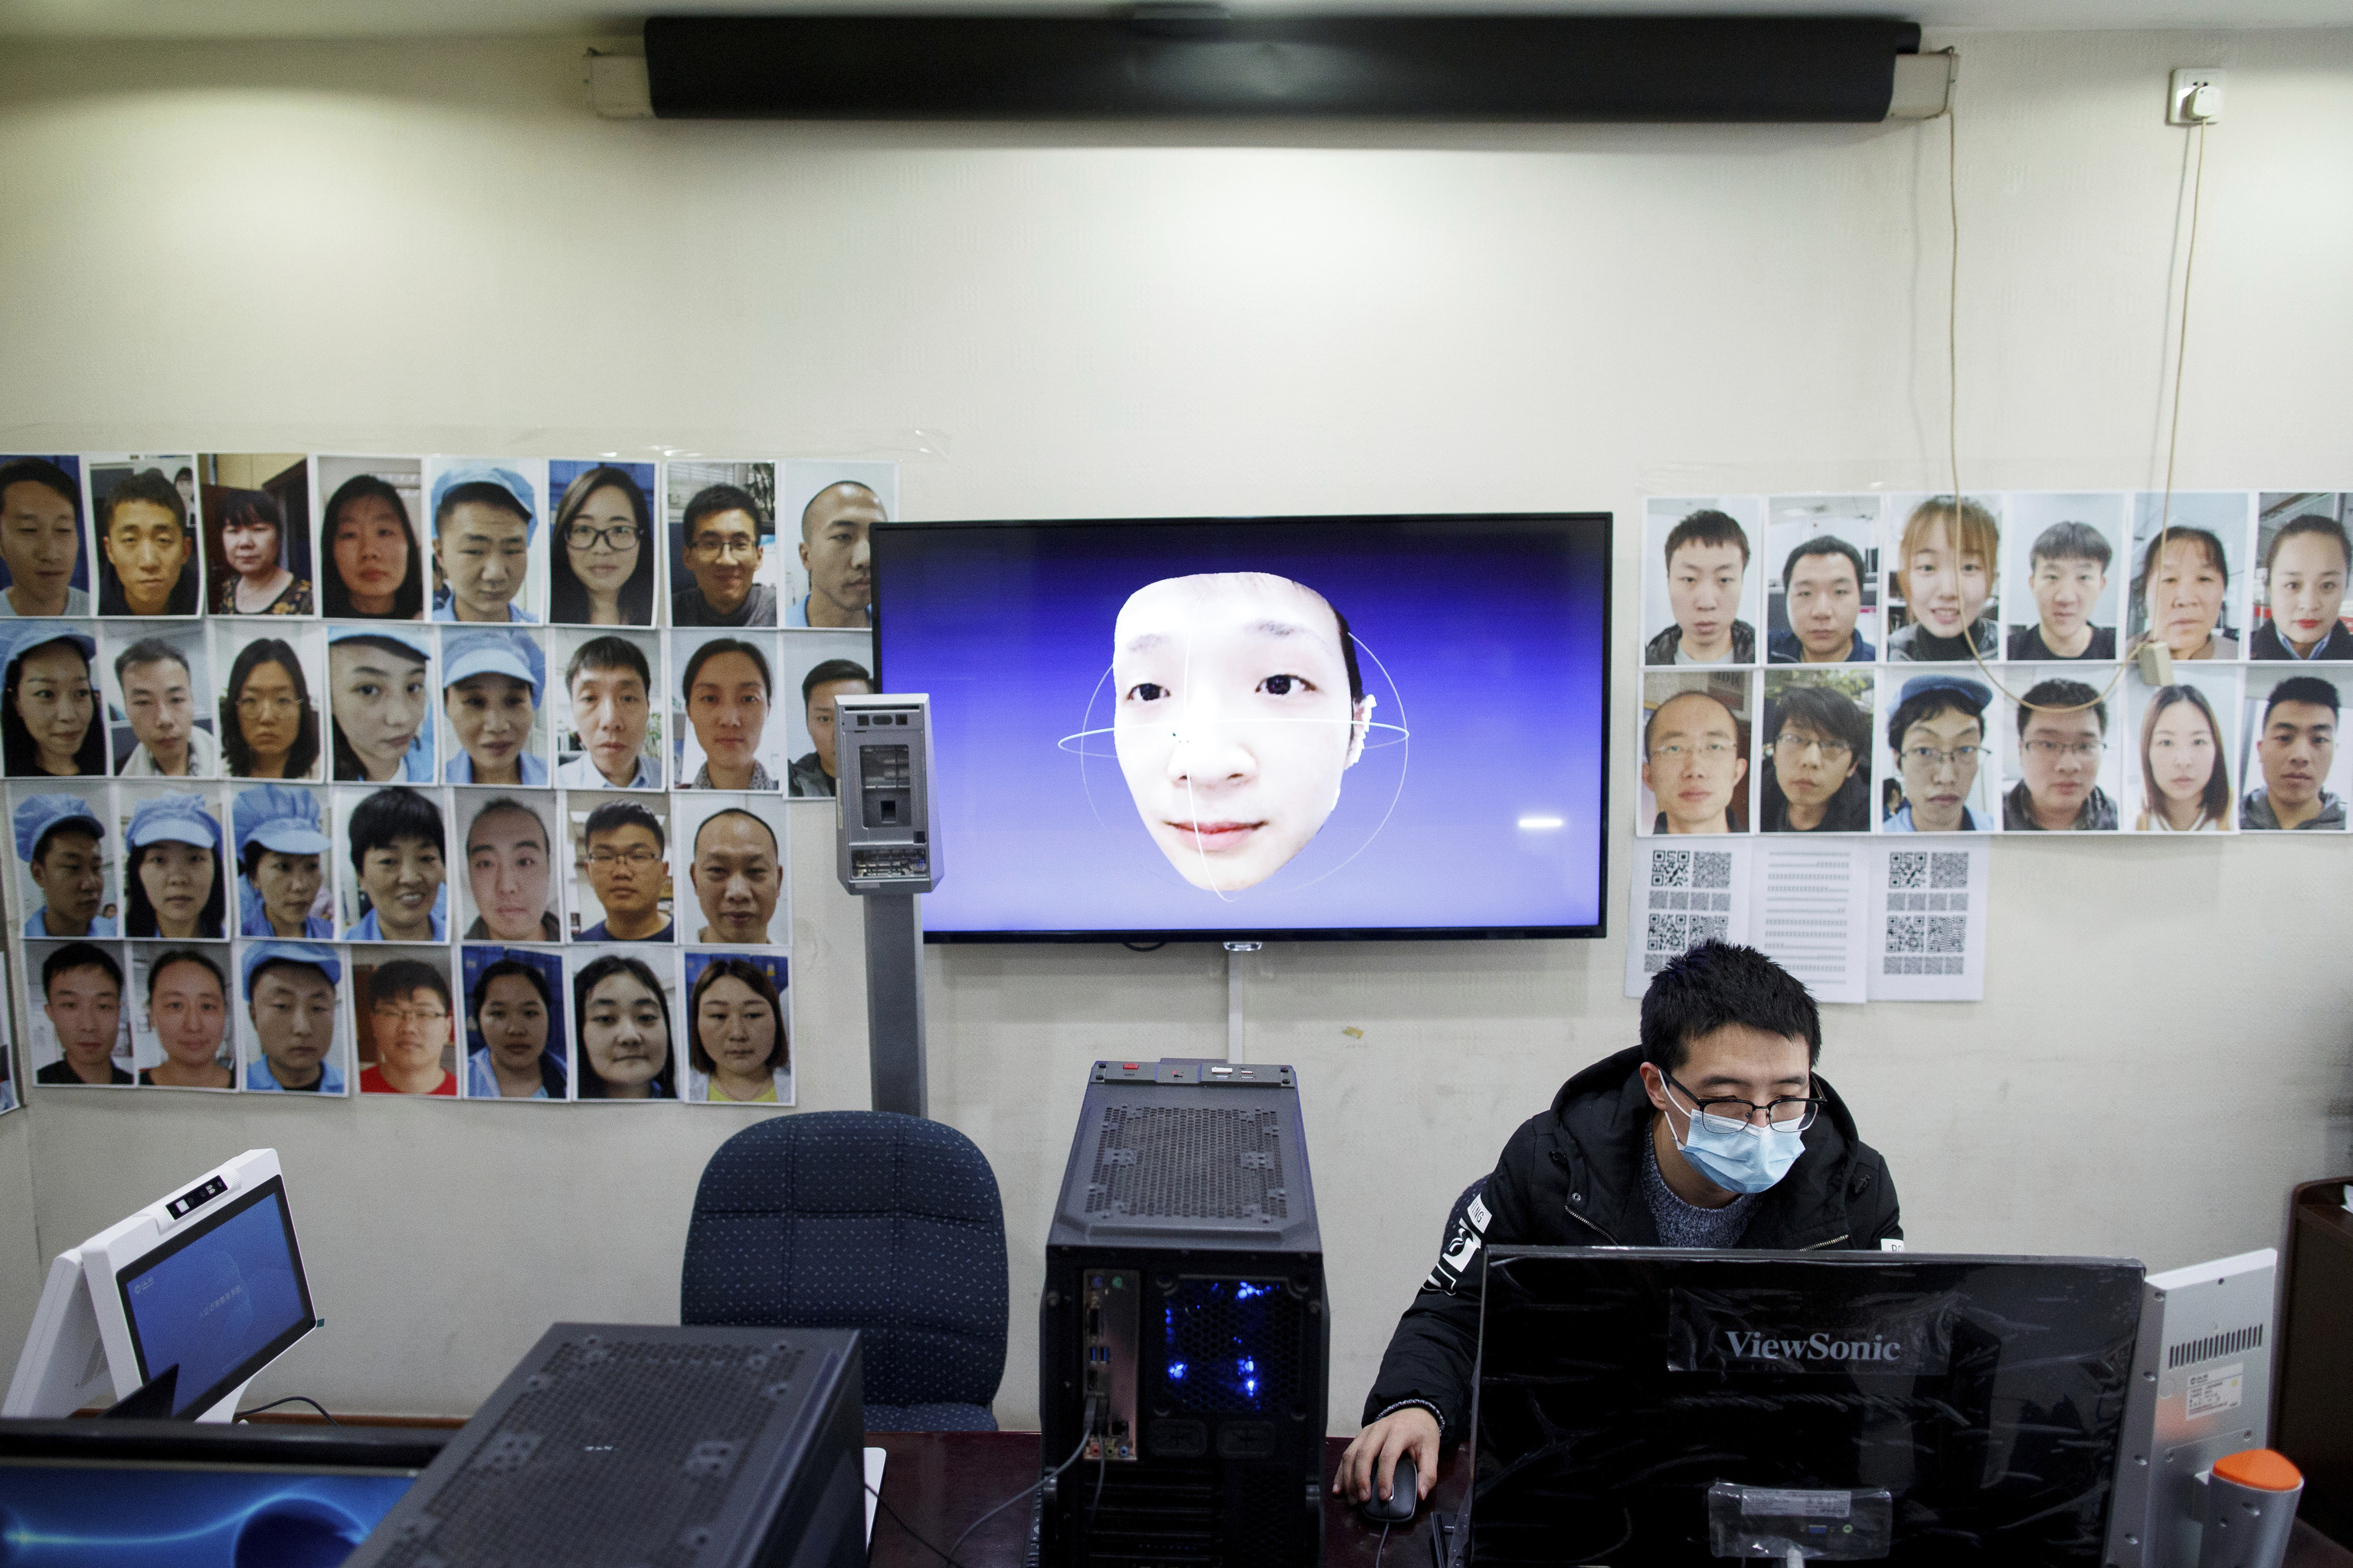 Videollamadas con la cara y la voz clonada de tu mujer para pedirte dinero: las estafas con inteligencia artificial se disparan en China